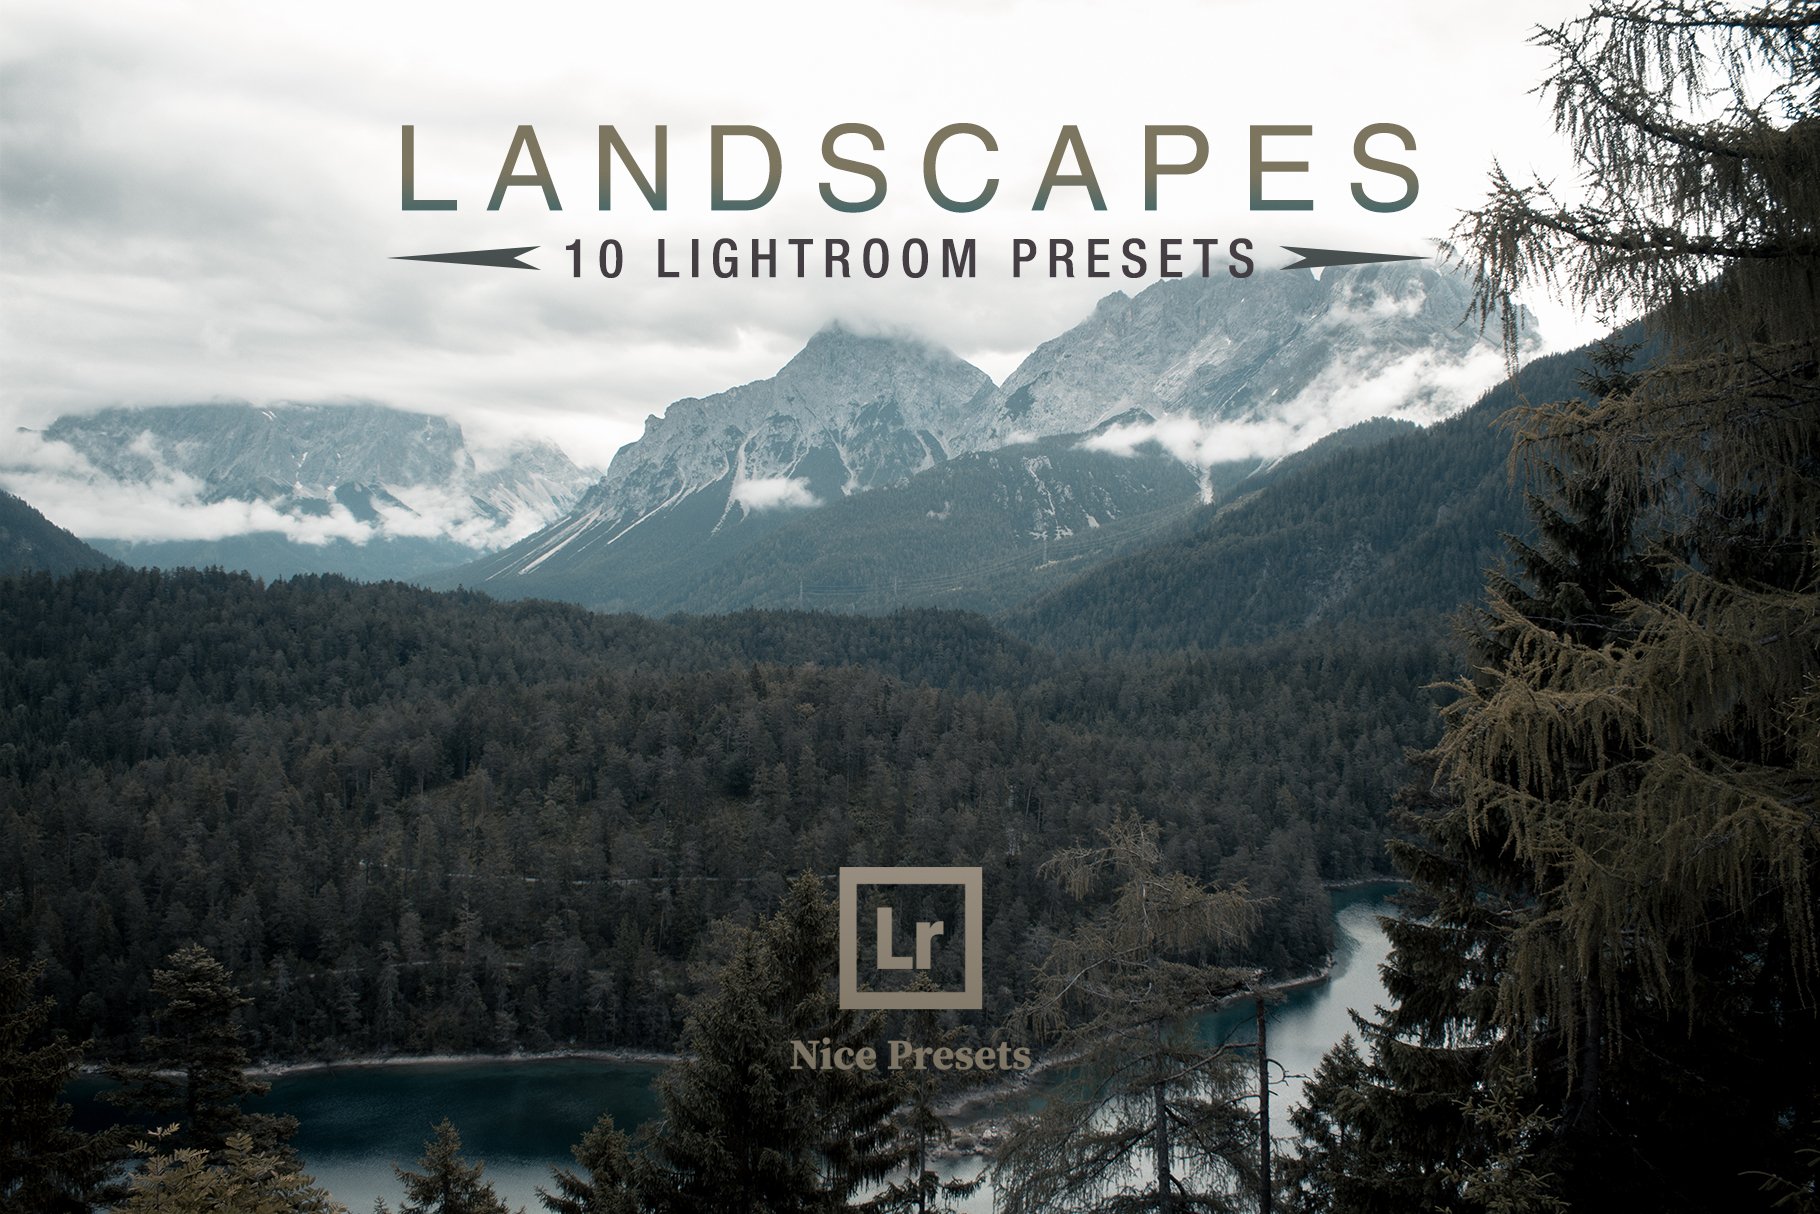 Landscapes - Lightroom Presetscover image.